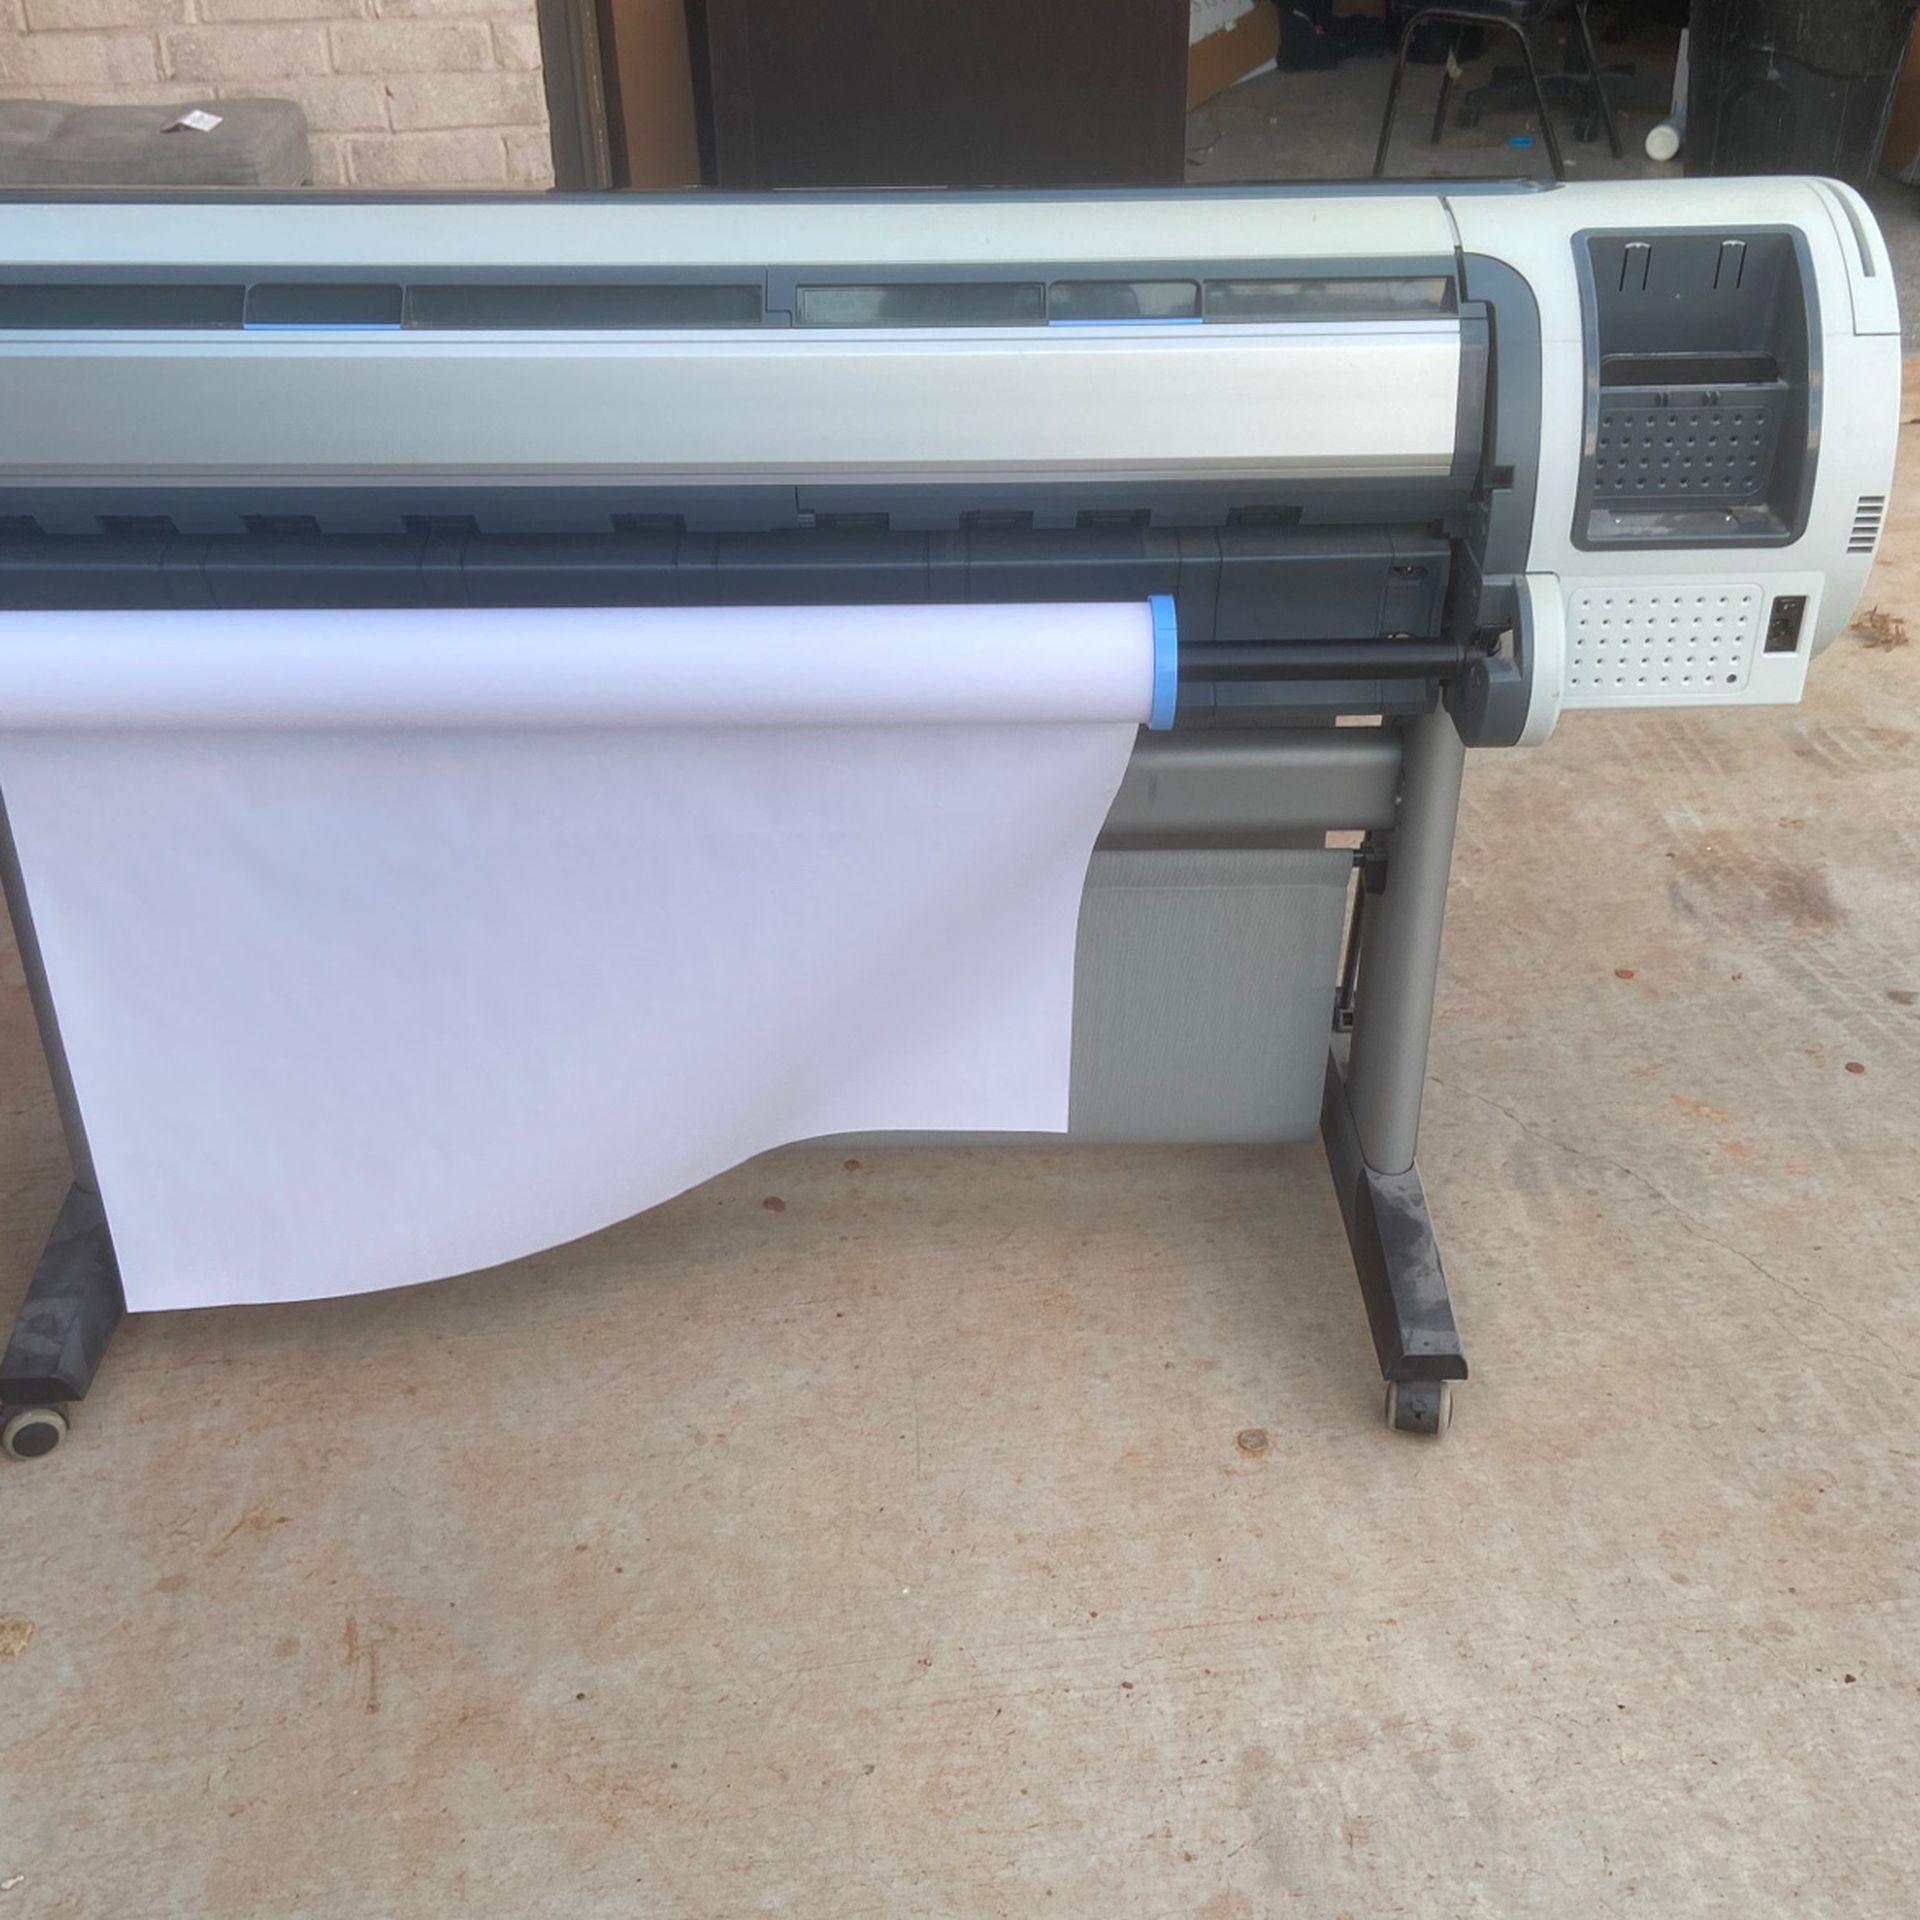 HP Designjet T1300 54" Large-Format Inkjet Color Plotter Printer